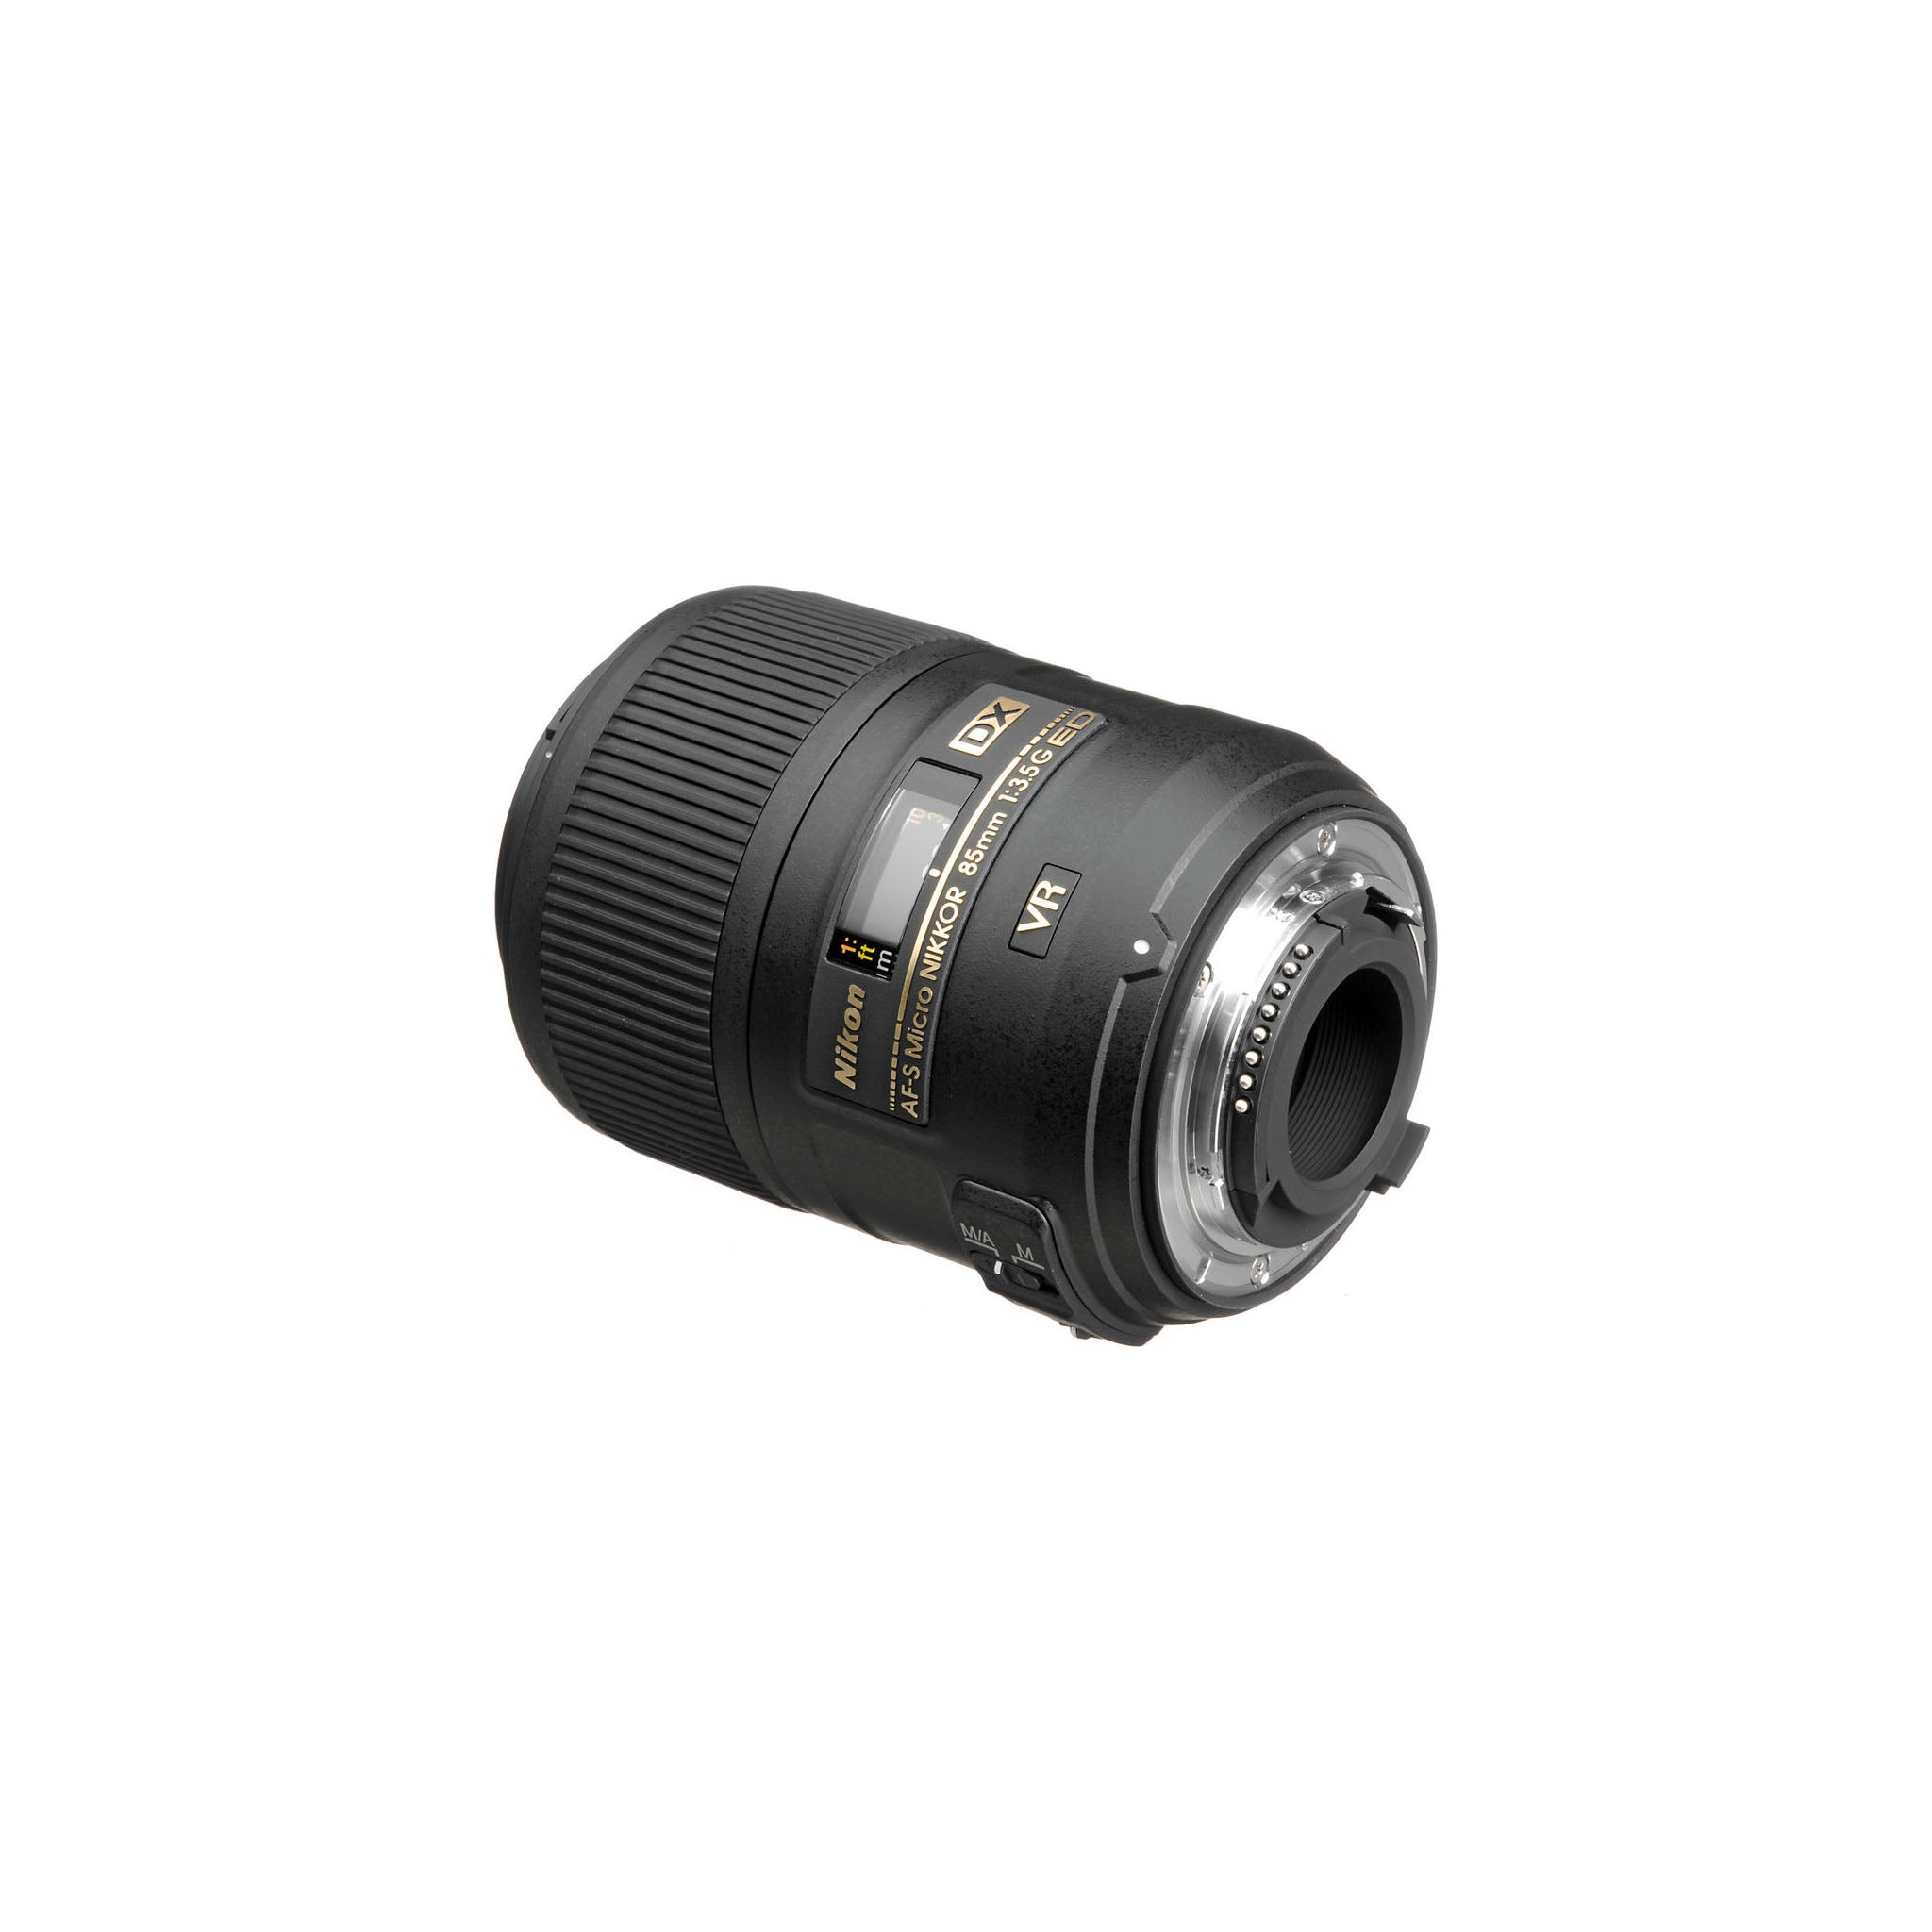 Nikon AF-S 85mm F3.5G ED VR DX Micro Lens